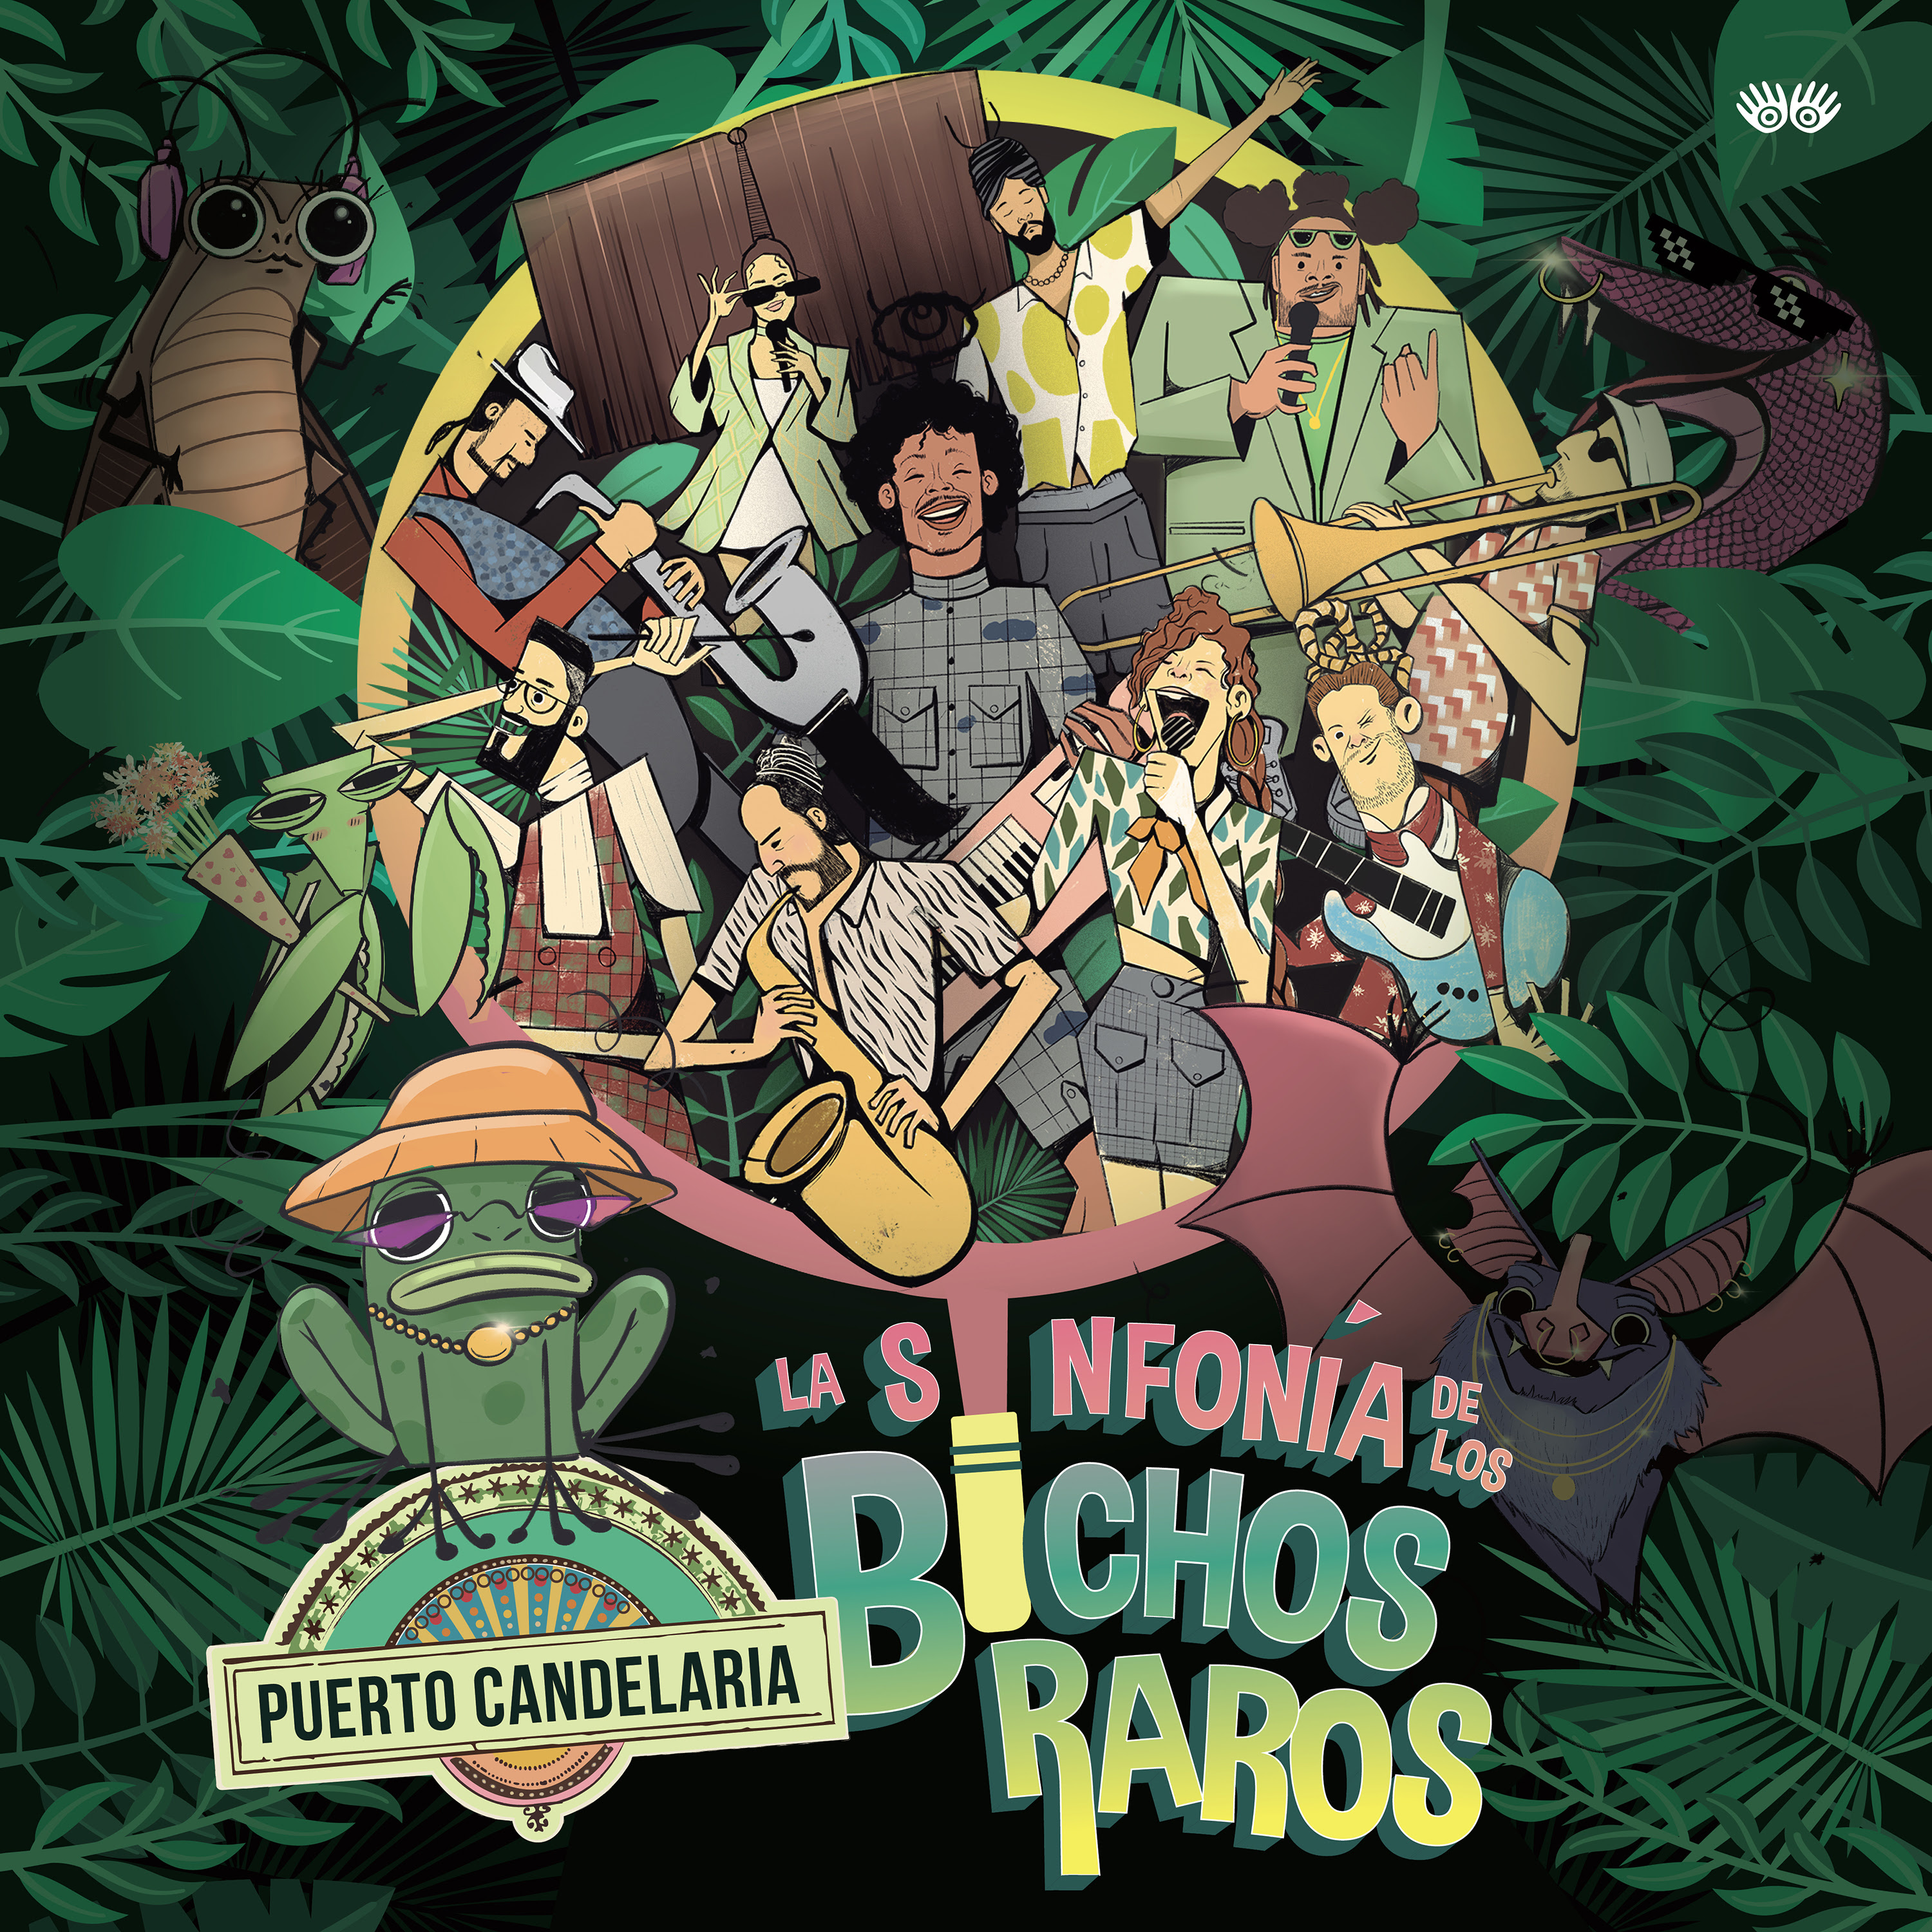 Puerto Candelaria Celebra Que Son “RAROS, PERO BIEN” Con su Nominación al Latin Grammy del álbum la Sinfonía de los Bichos Raros.